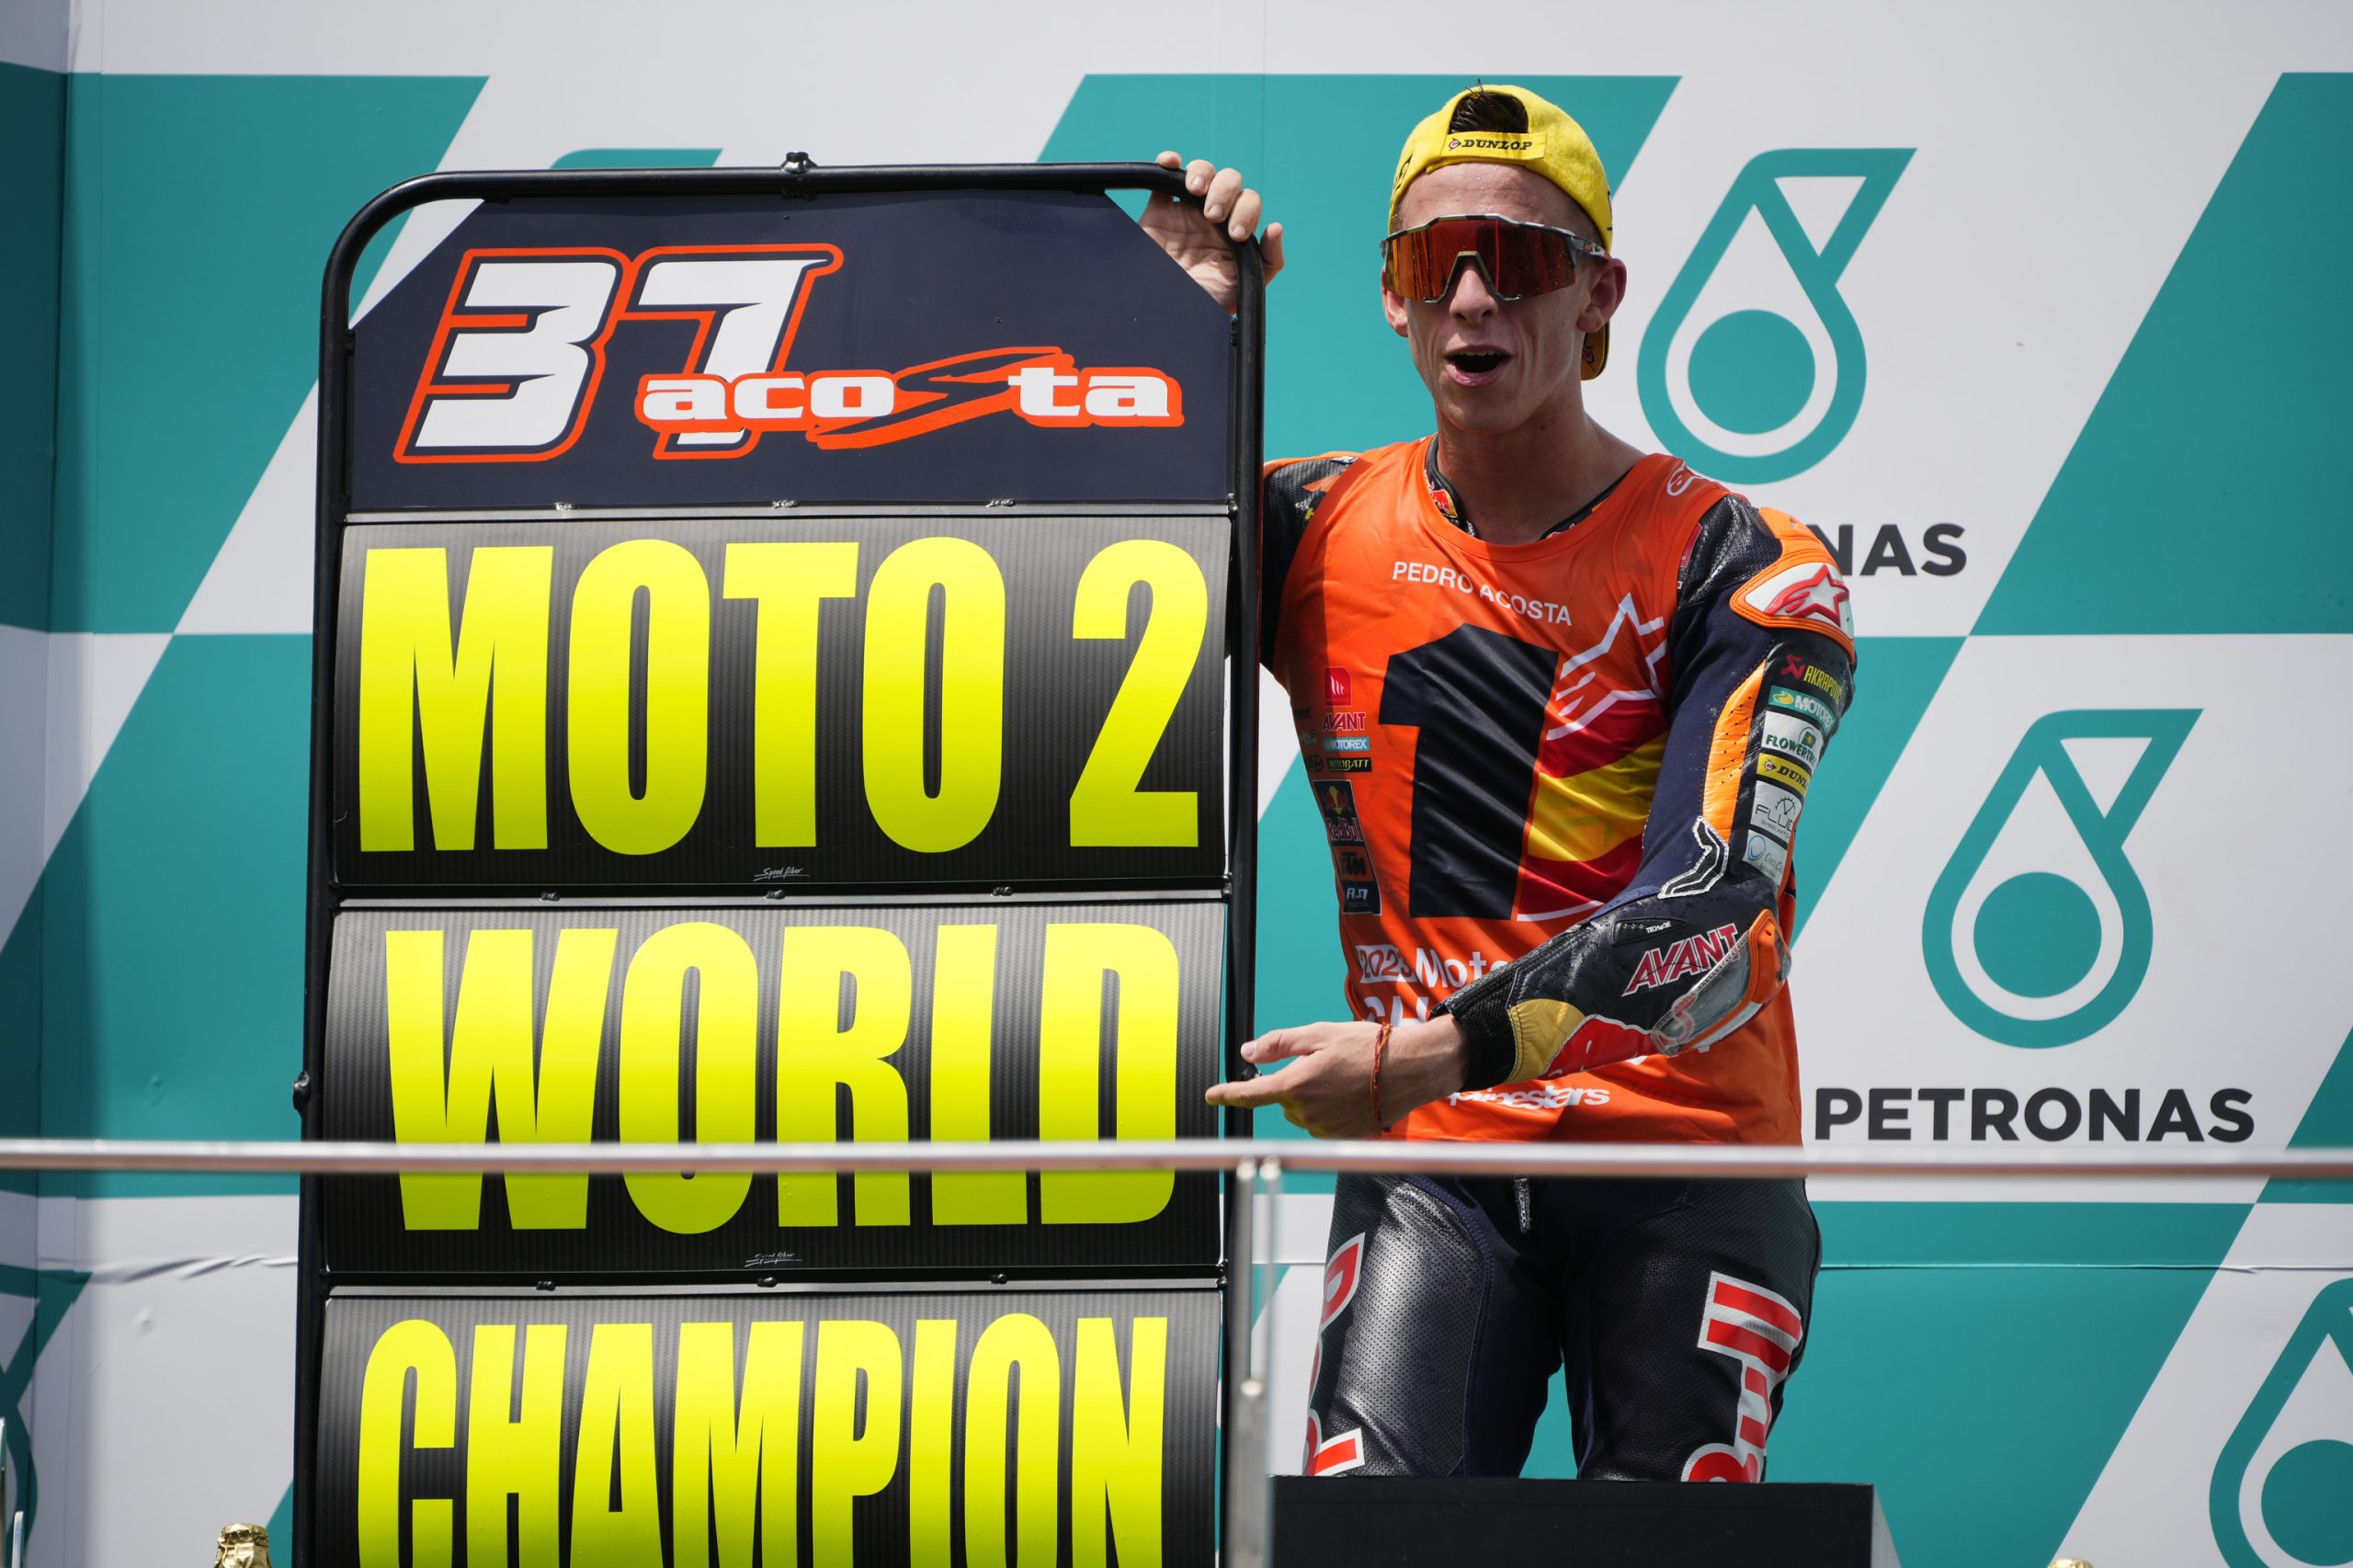 Pedro Acosta, campeÃ³n del mundo de Moto2: el 'TiburÃ³n' muerde por segunda vez